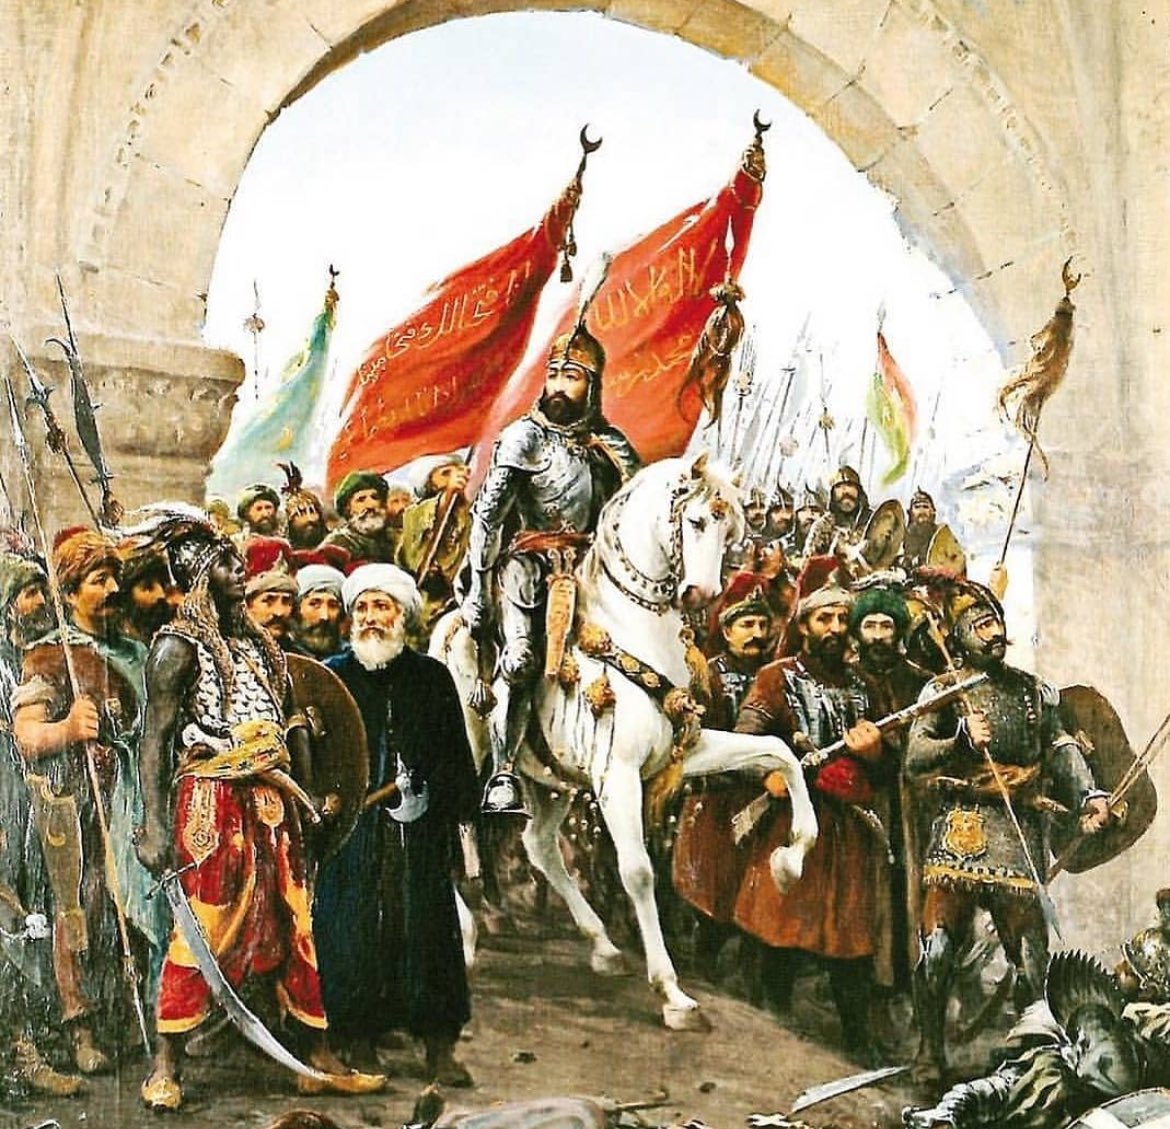 Çağ açıp çağ kapatan büyük komutan Fatih Sultan Mehmet'i vefatının yıl dönümünde saygıyla anıyoruz.

Ruhun şad olsun Atam! 

#FatihSultanMehmetHan